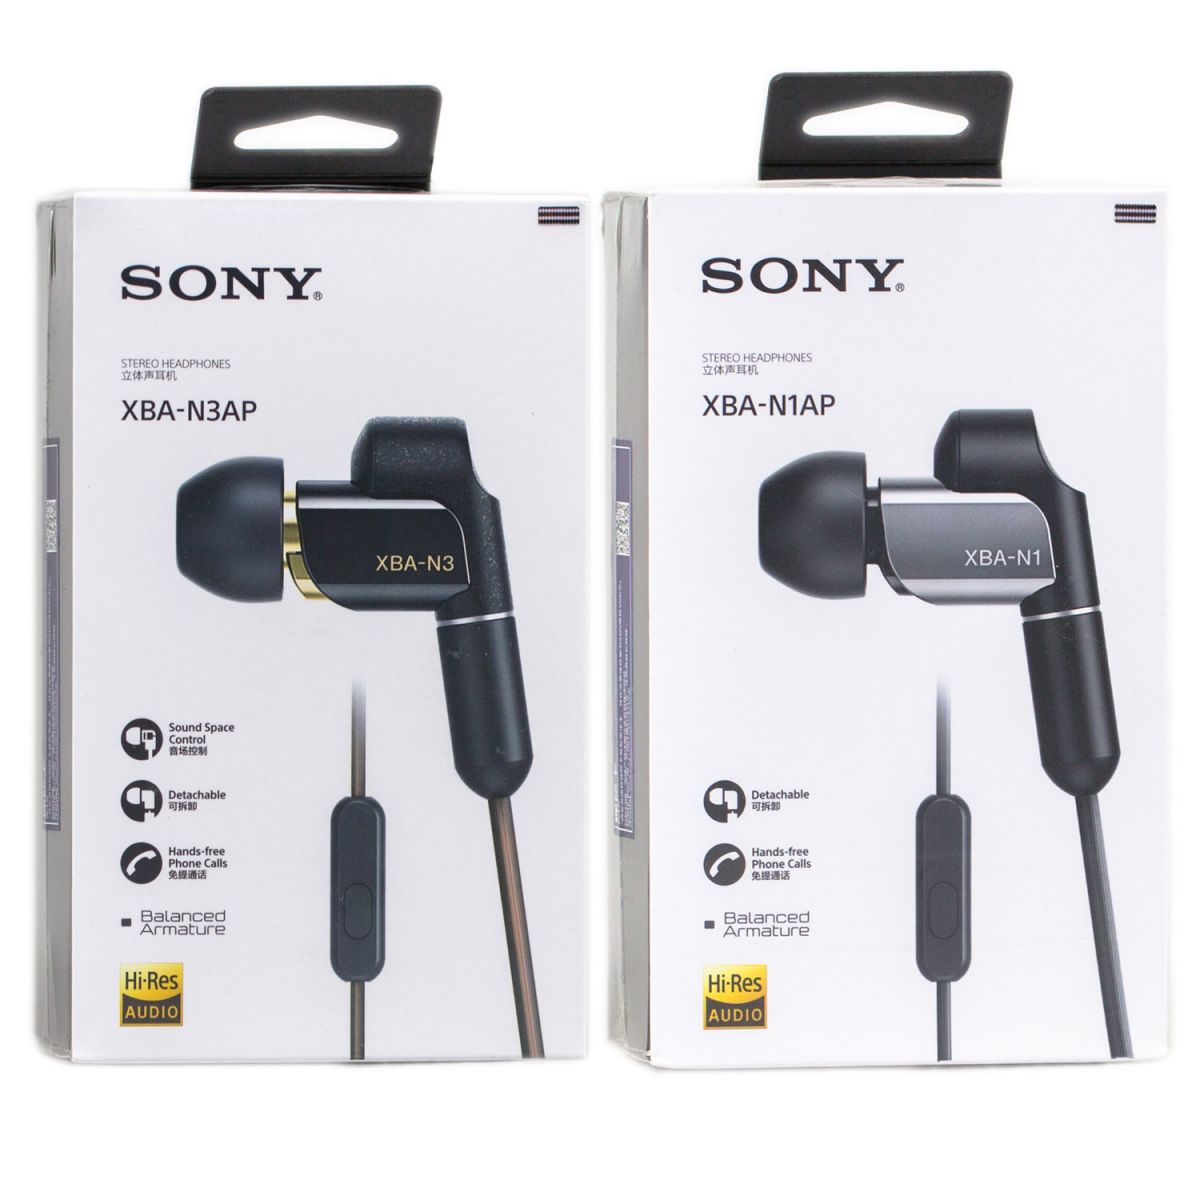 Audioshop cung cấp tai nghe Sony XBA-N1AP chính hãng